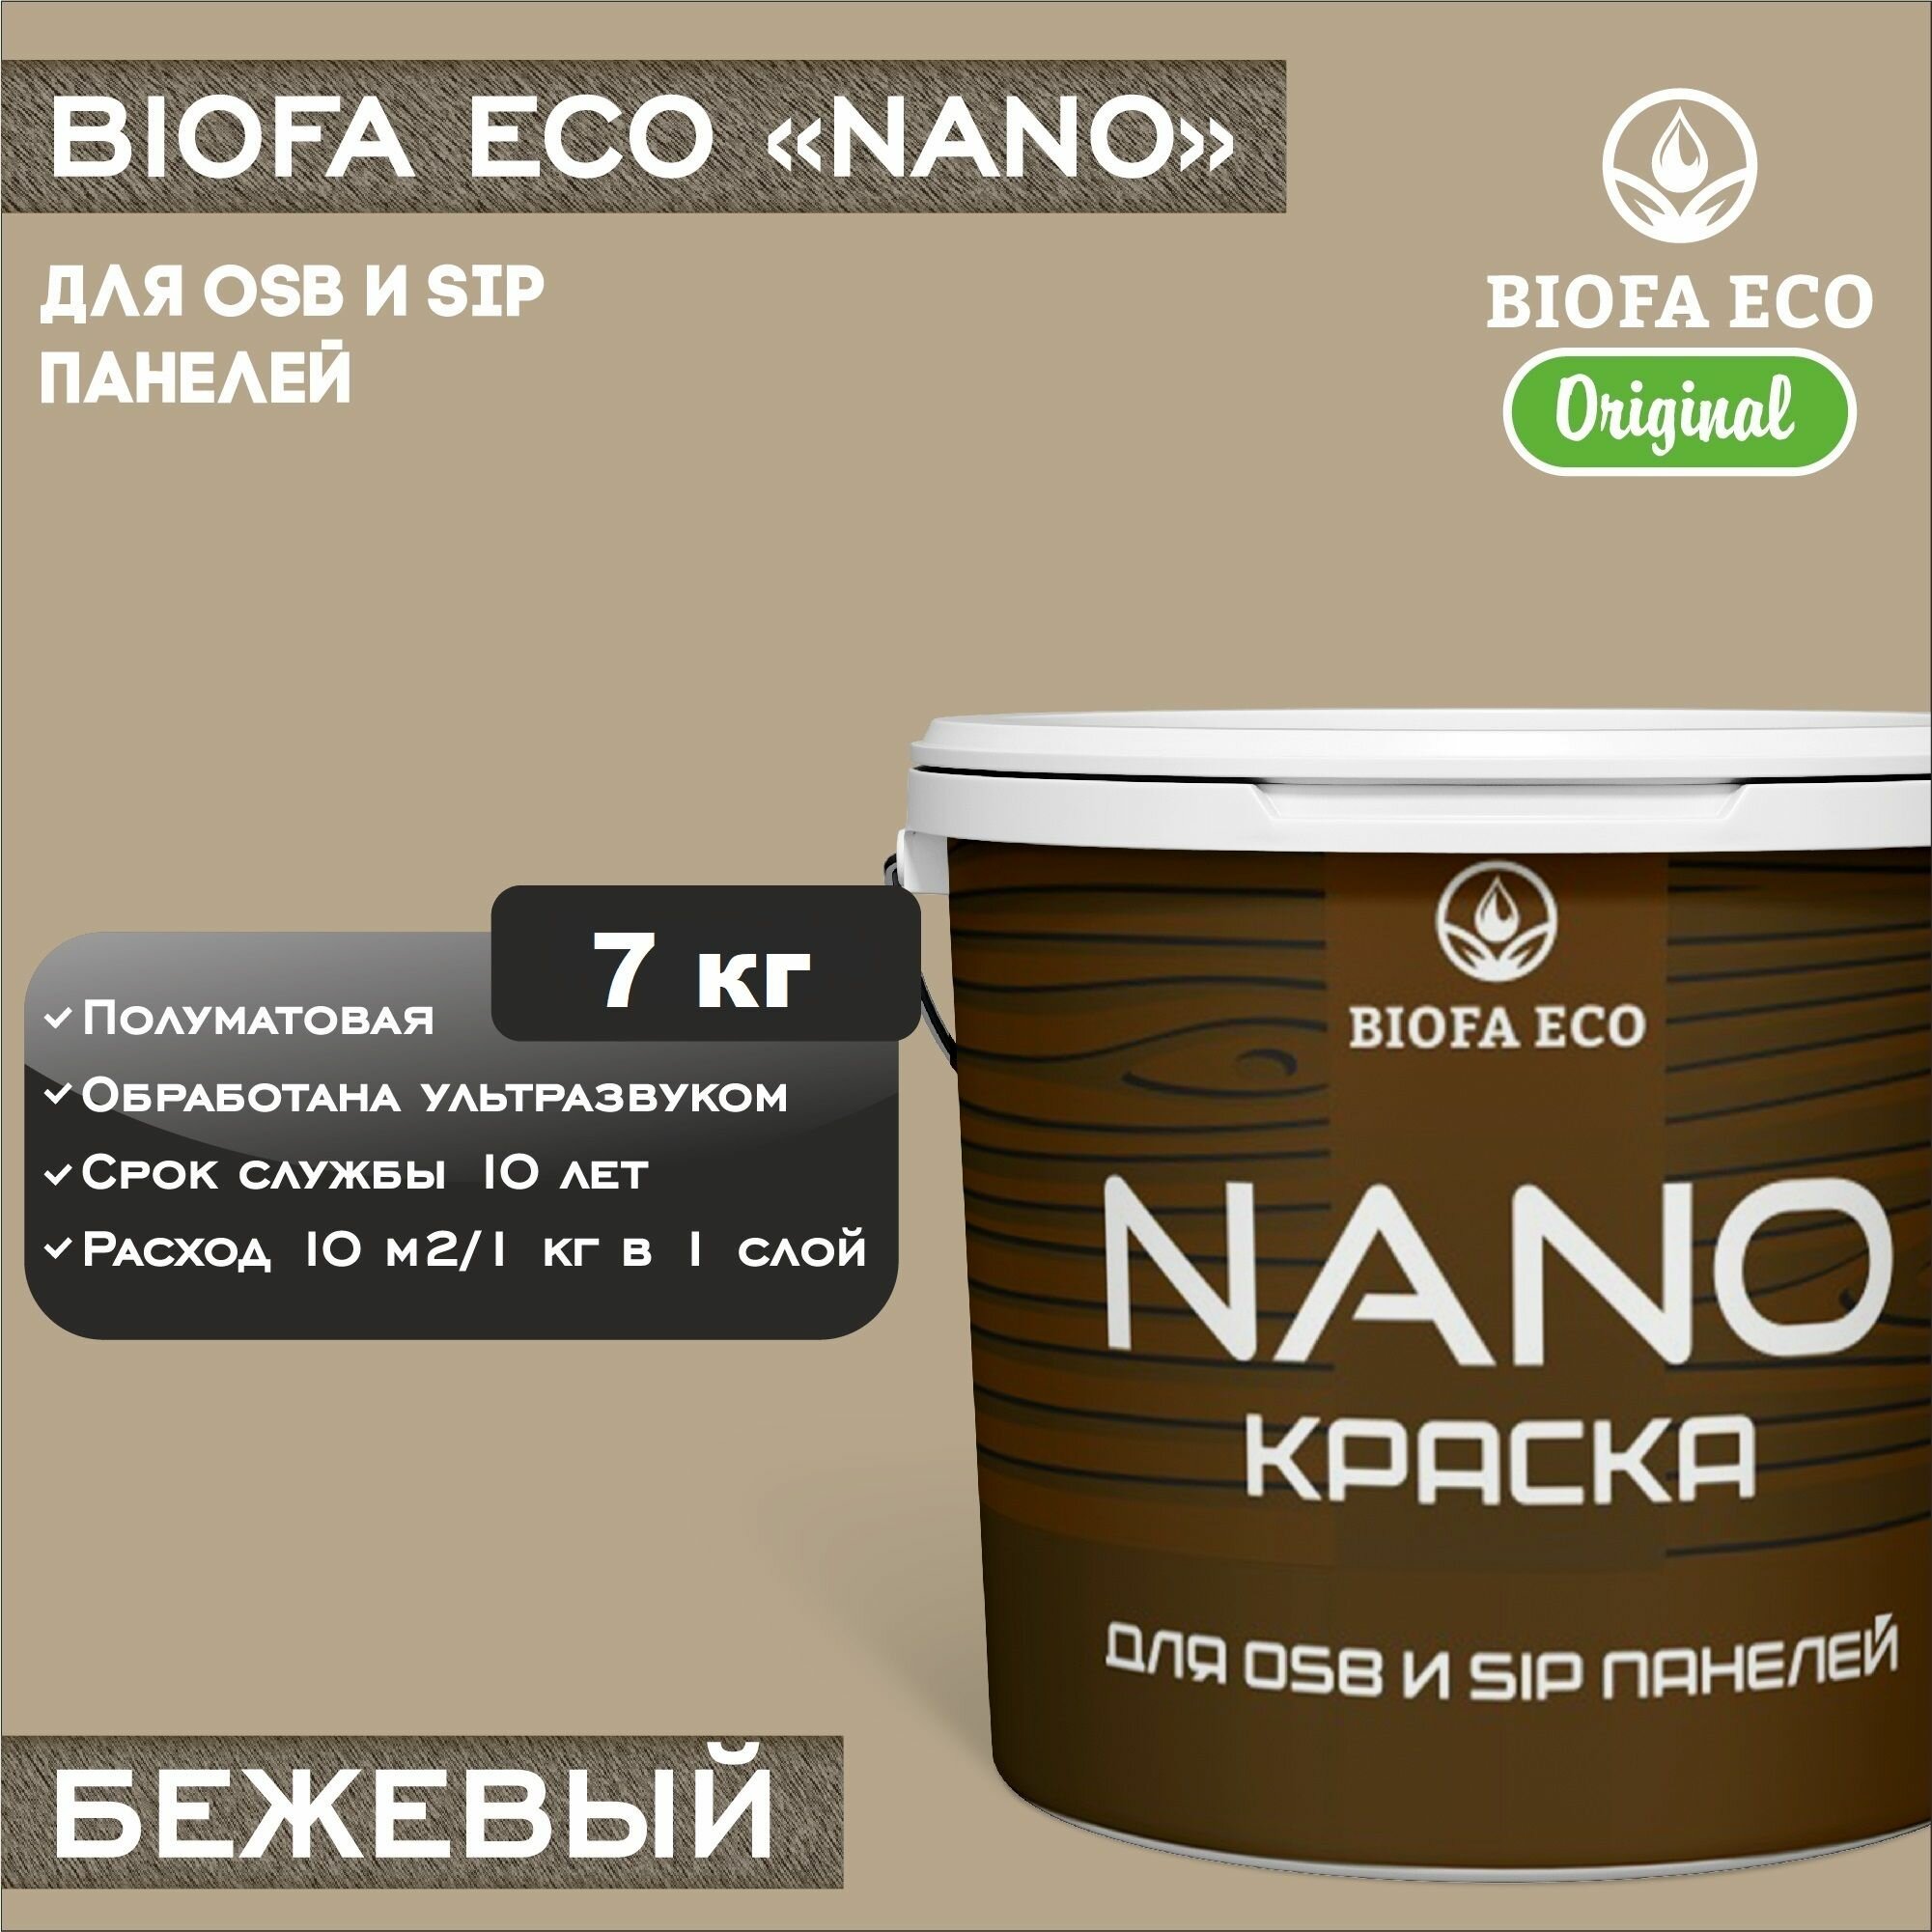 Краска BIOFA ECO NANO для OSB и SIP панелей, укривистая, полуматовая, цвет бежевый, 7 кг